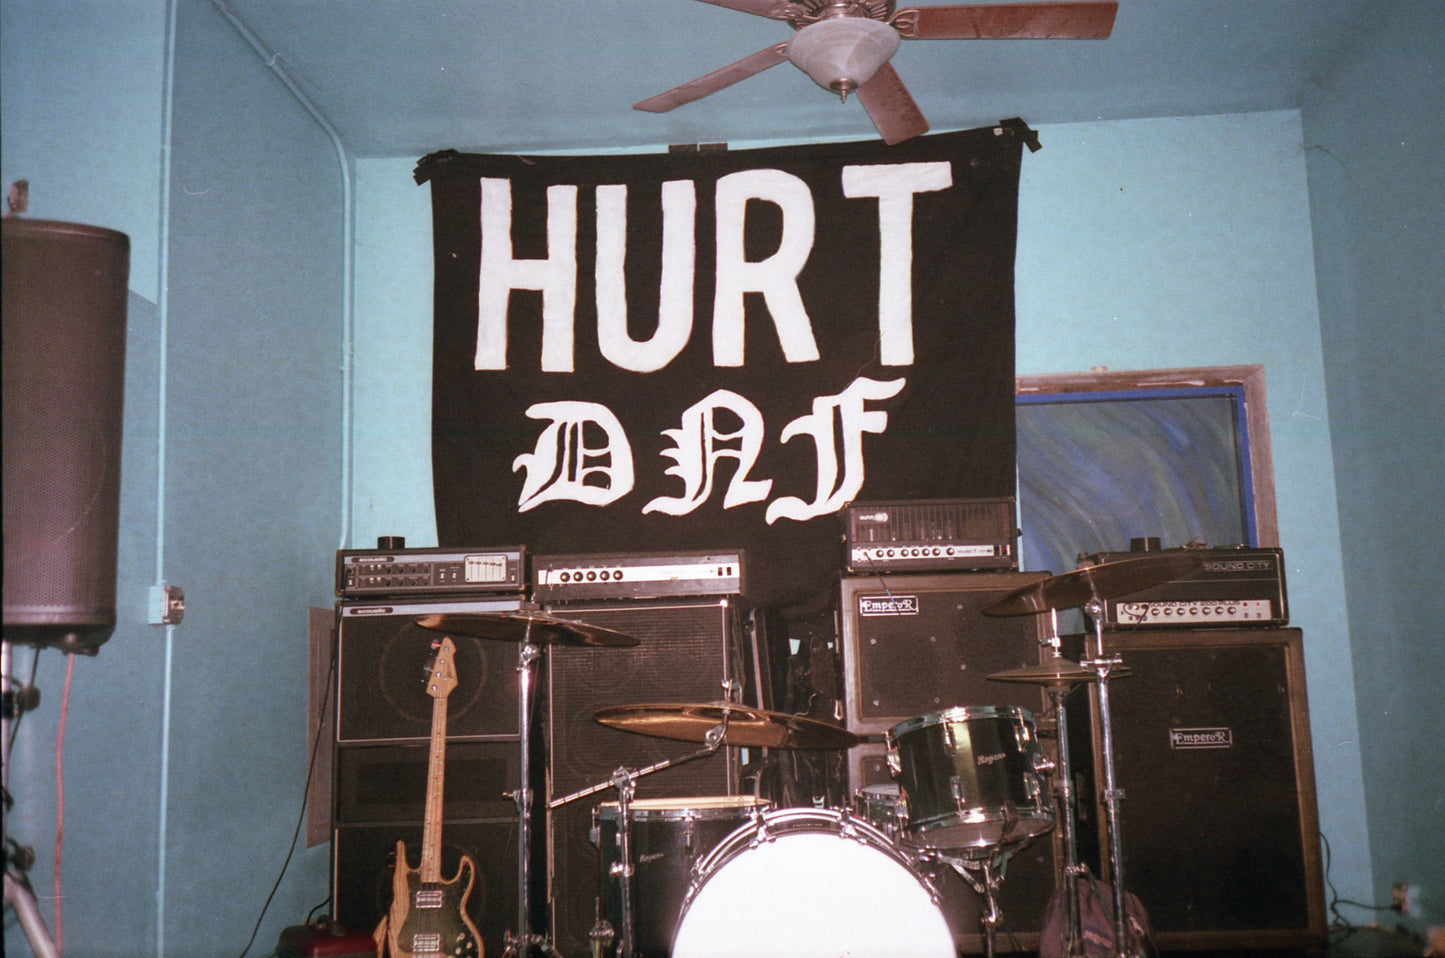 DNF "Hurt"